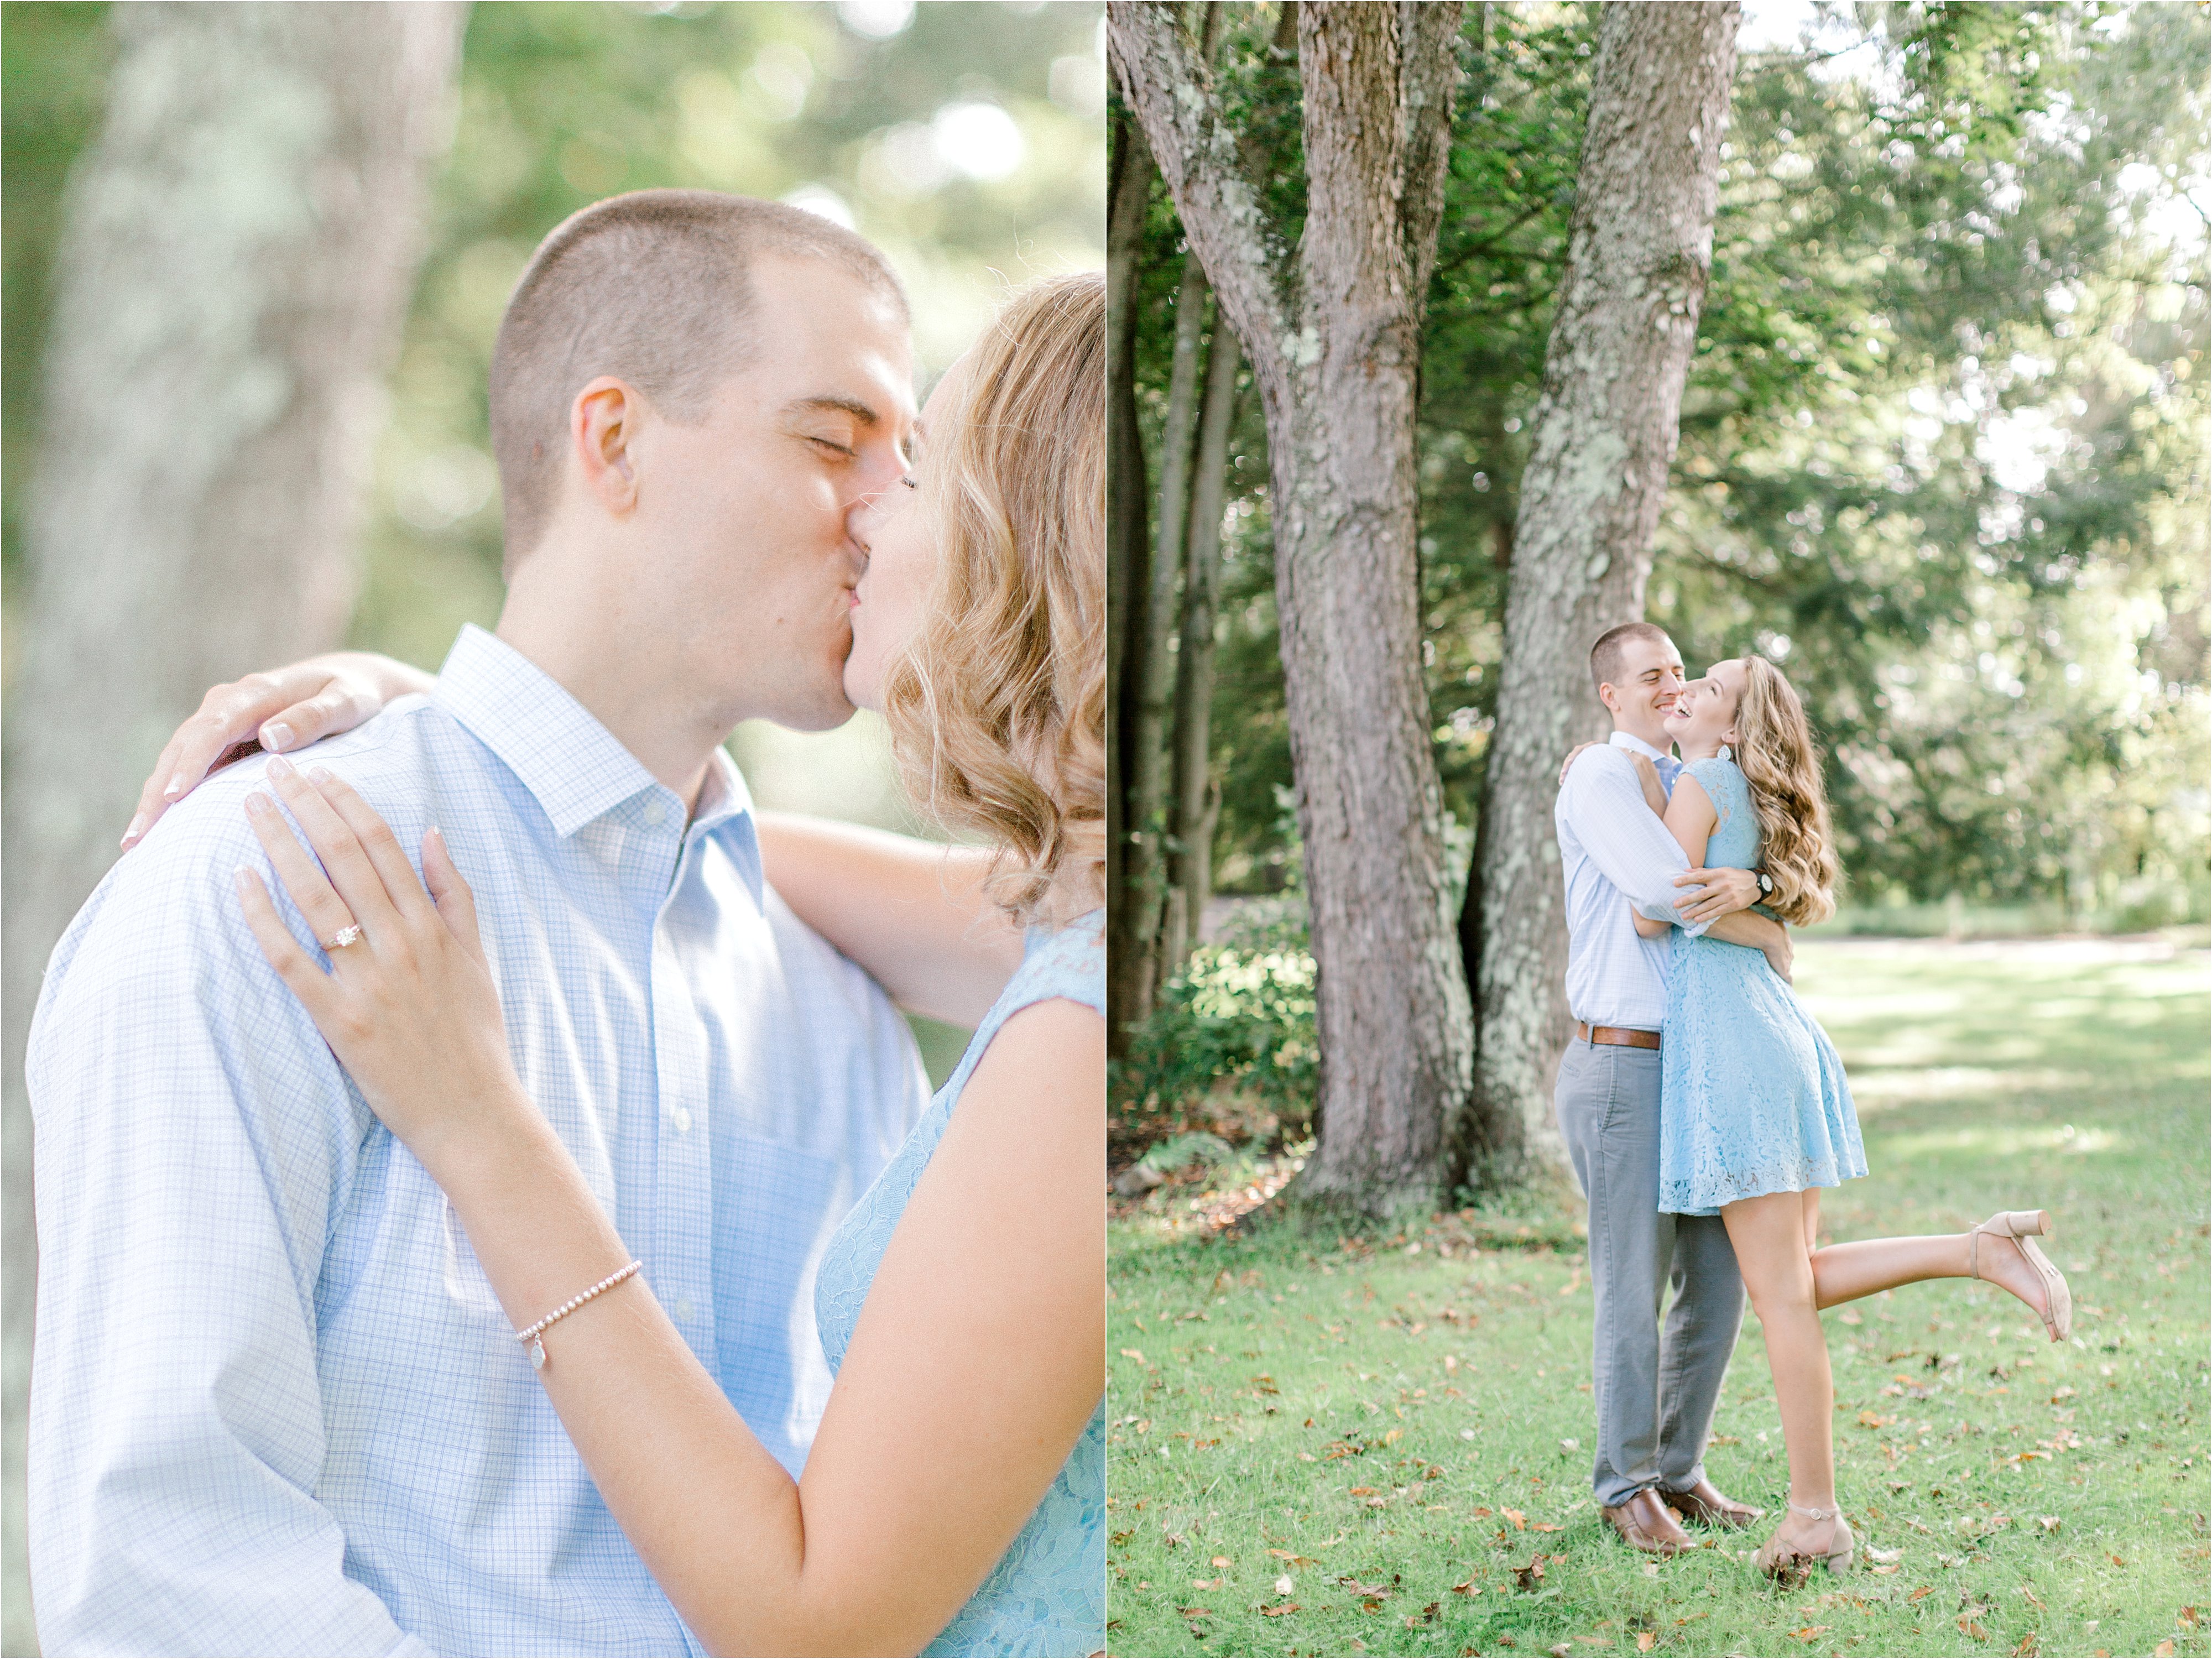 Cleveland wedding photographers photographing engagement session